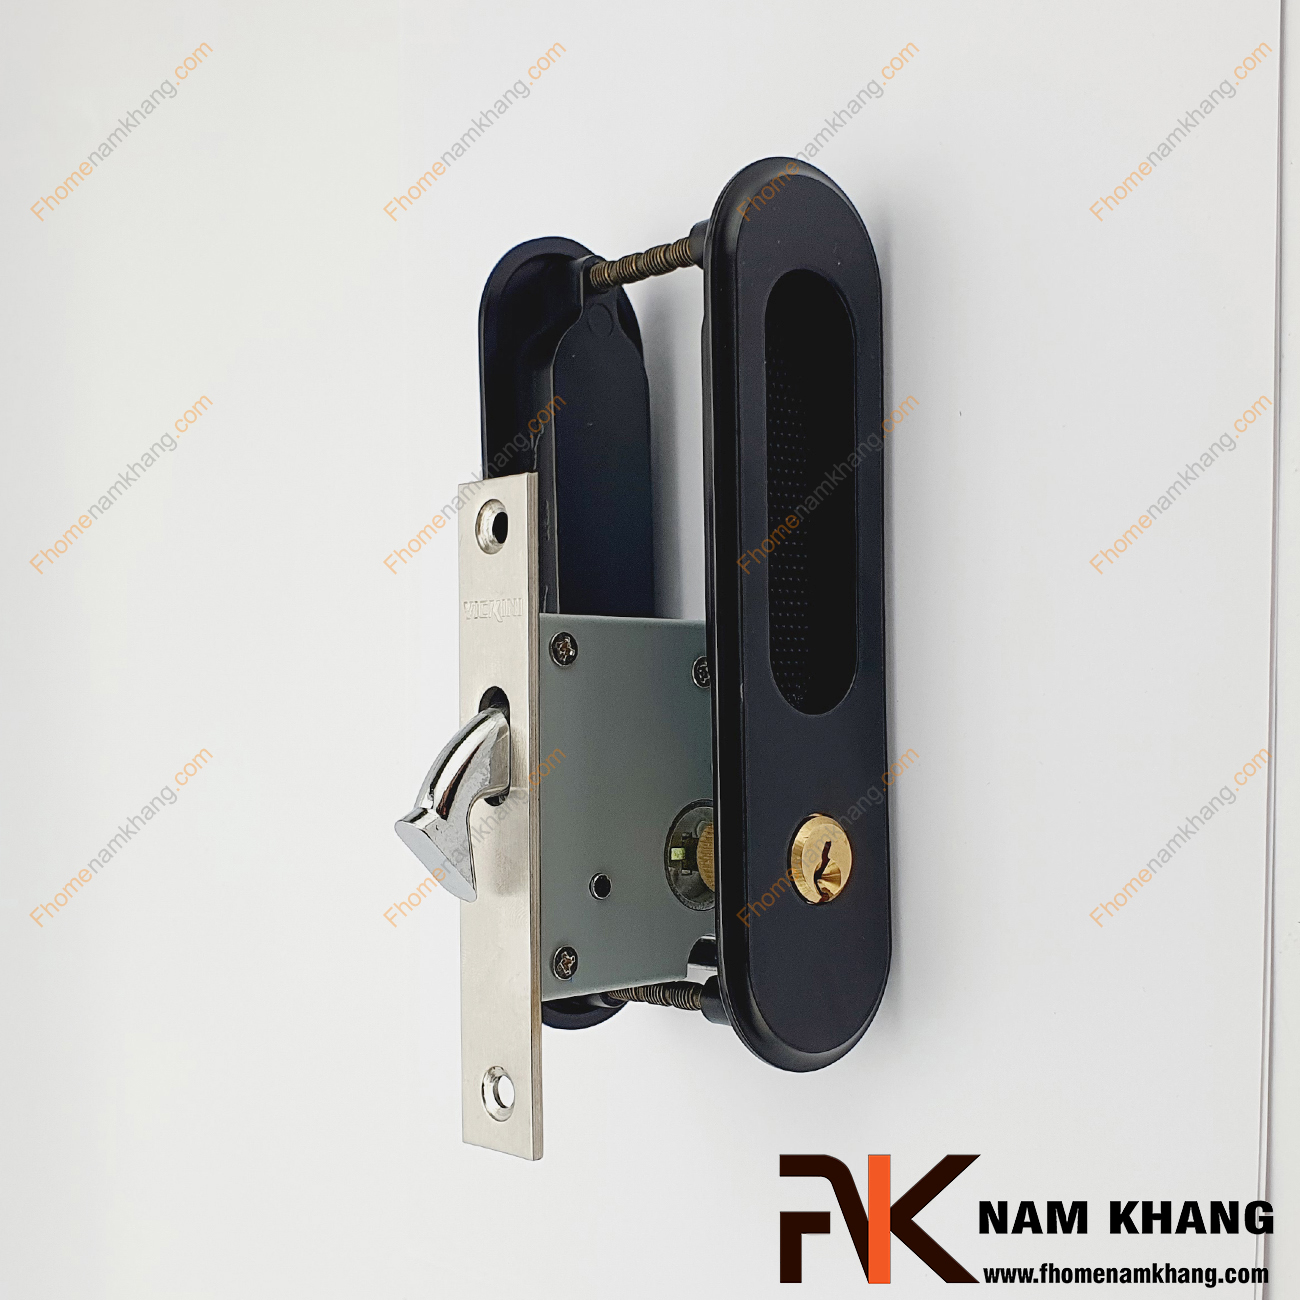 Khóa âm cửa lùa cao cấp màu đen NK568T-D là dòng khóa thông dụng và được ưa chuộng sử dụng tại thị trường Việt Nam.